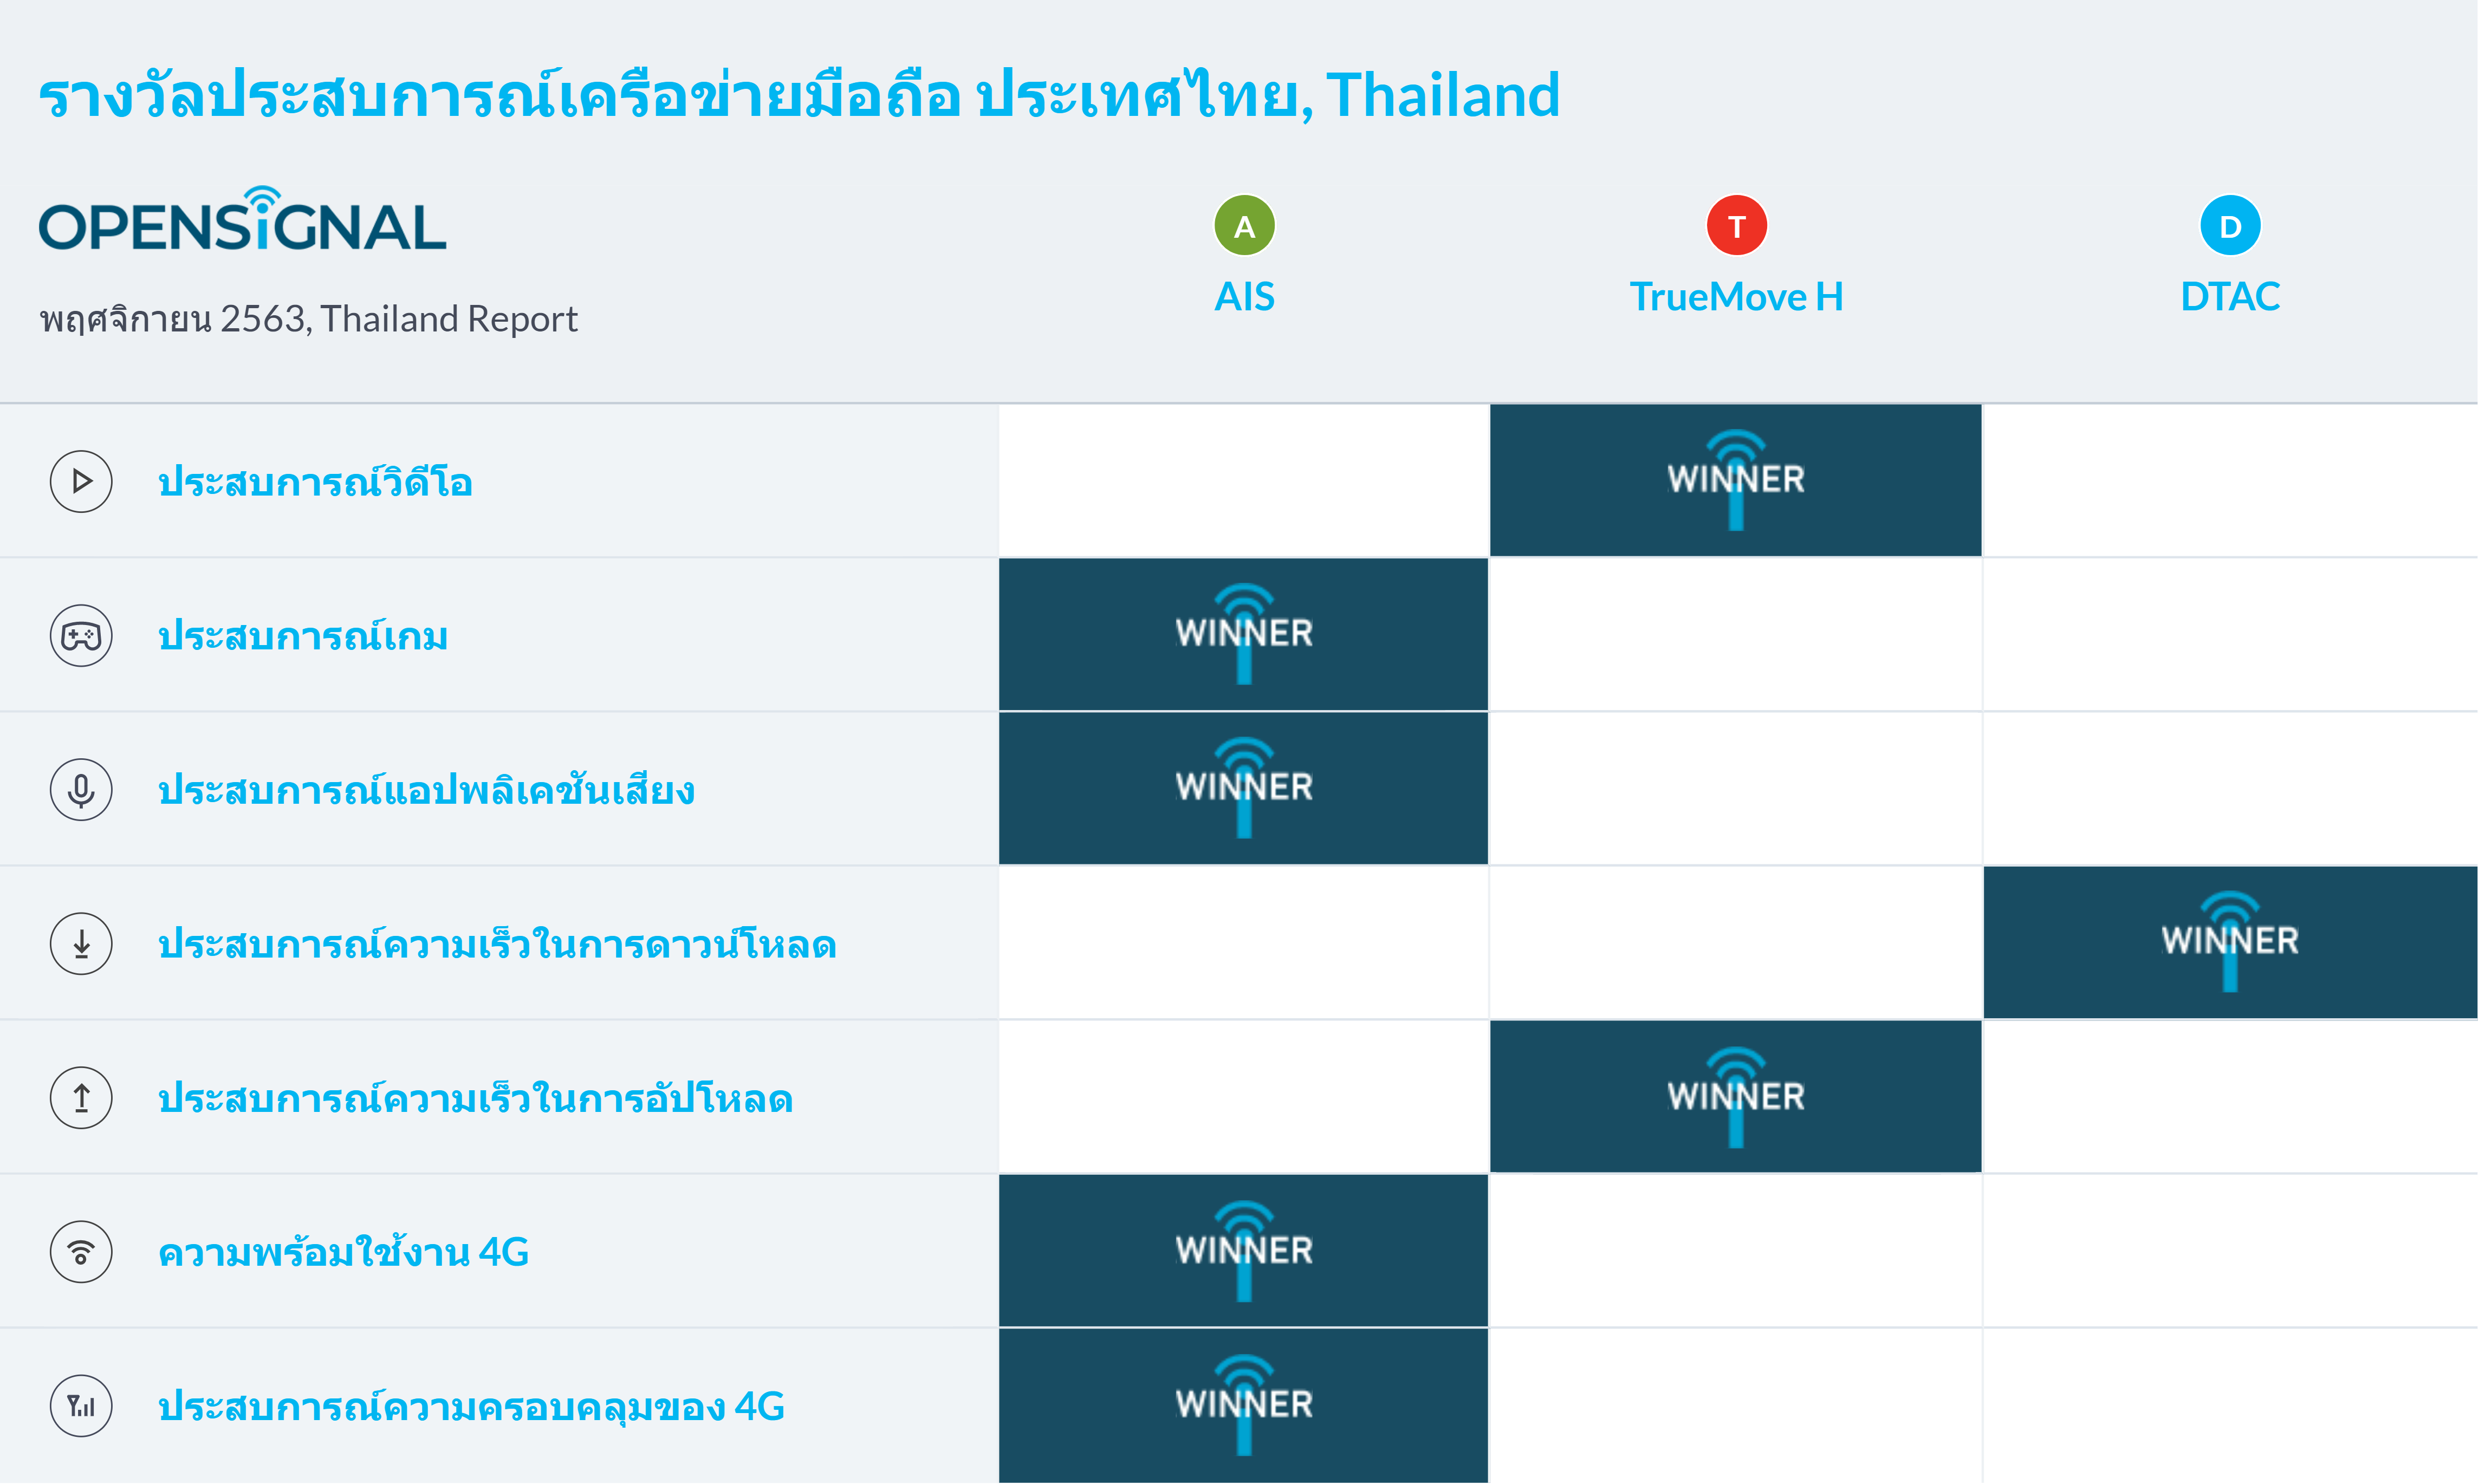 รายงานประสบการณ์การใช้เครือข่ายมือถือของประเทศไทย ประจำปี 2563